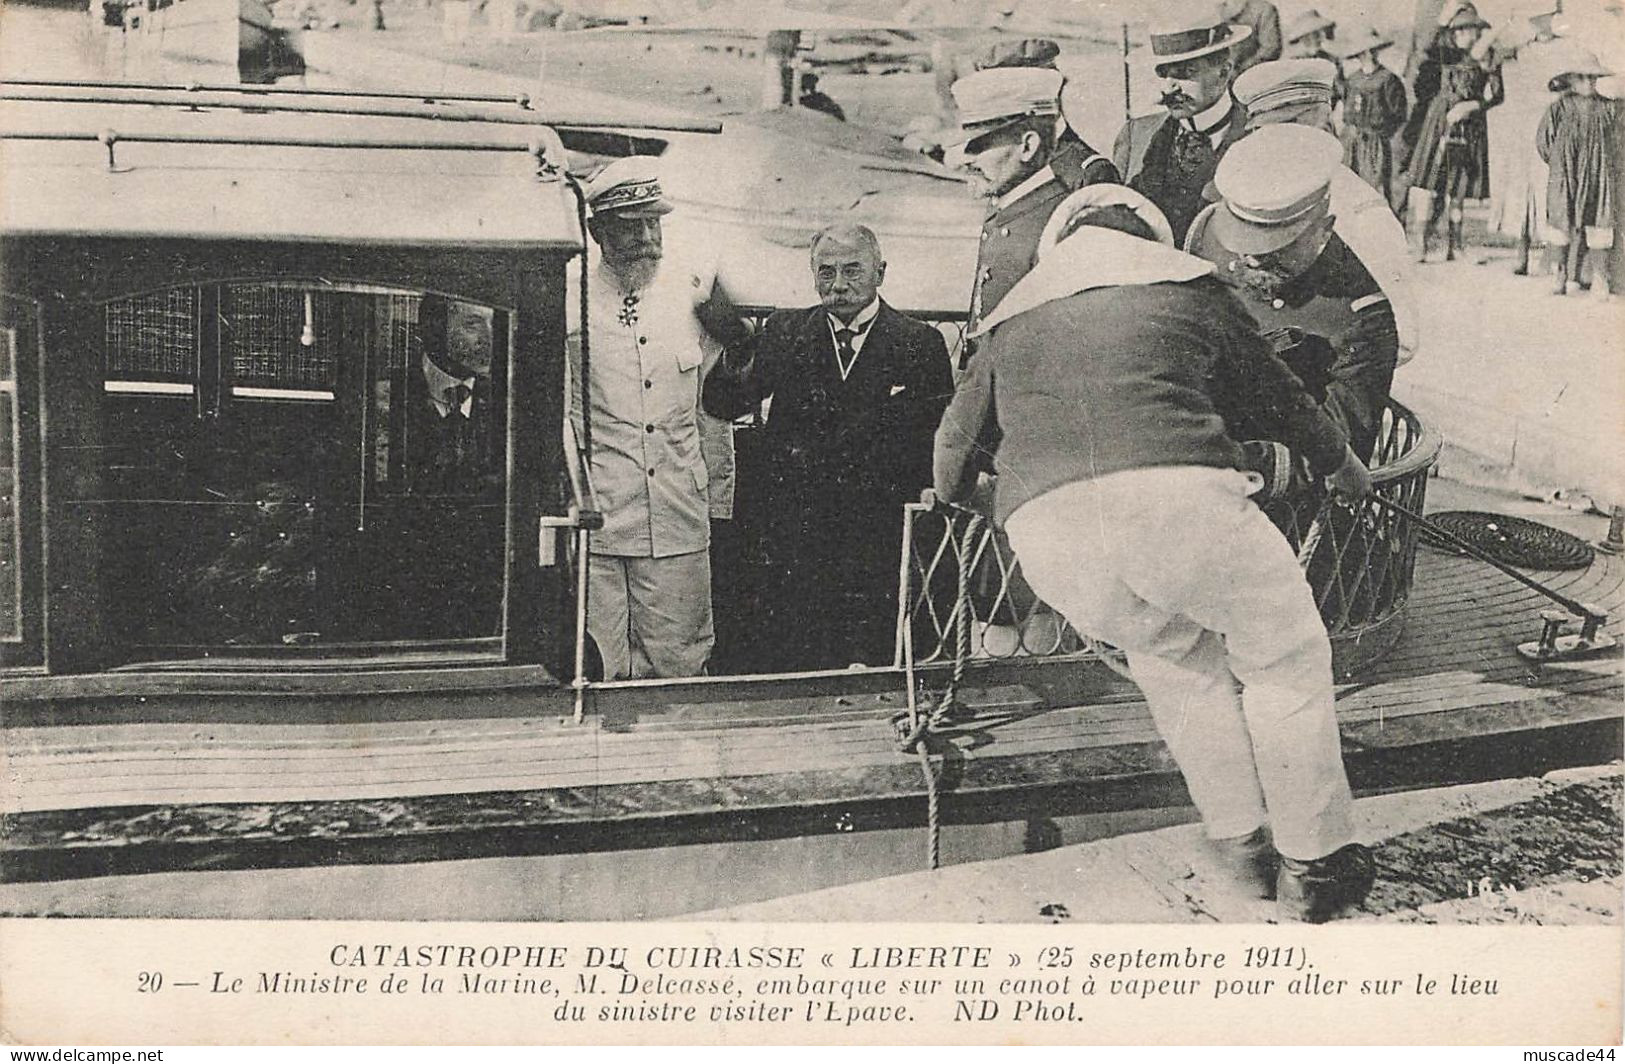 CATASTROPHE DU CUIRASSE LIBERTE - LE MINISTRE DE LA MARINE M. DELCASSE EMBARQUE SUR UN CANOT A VAPEUR - Krieg